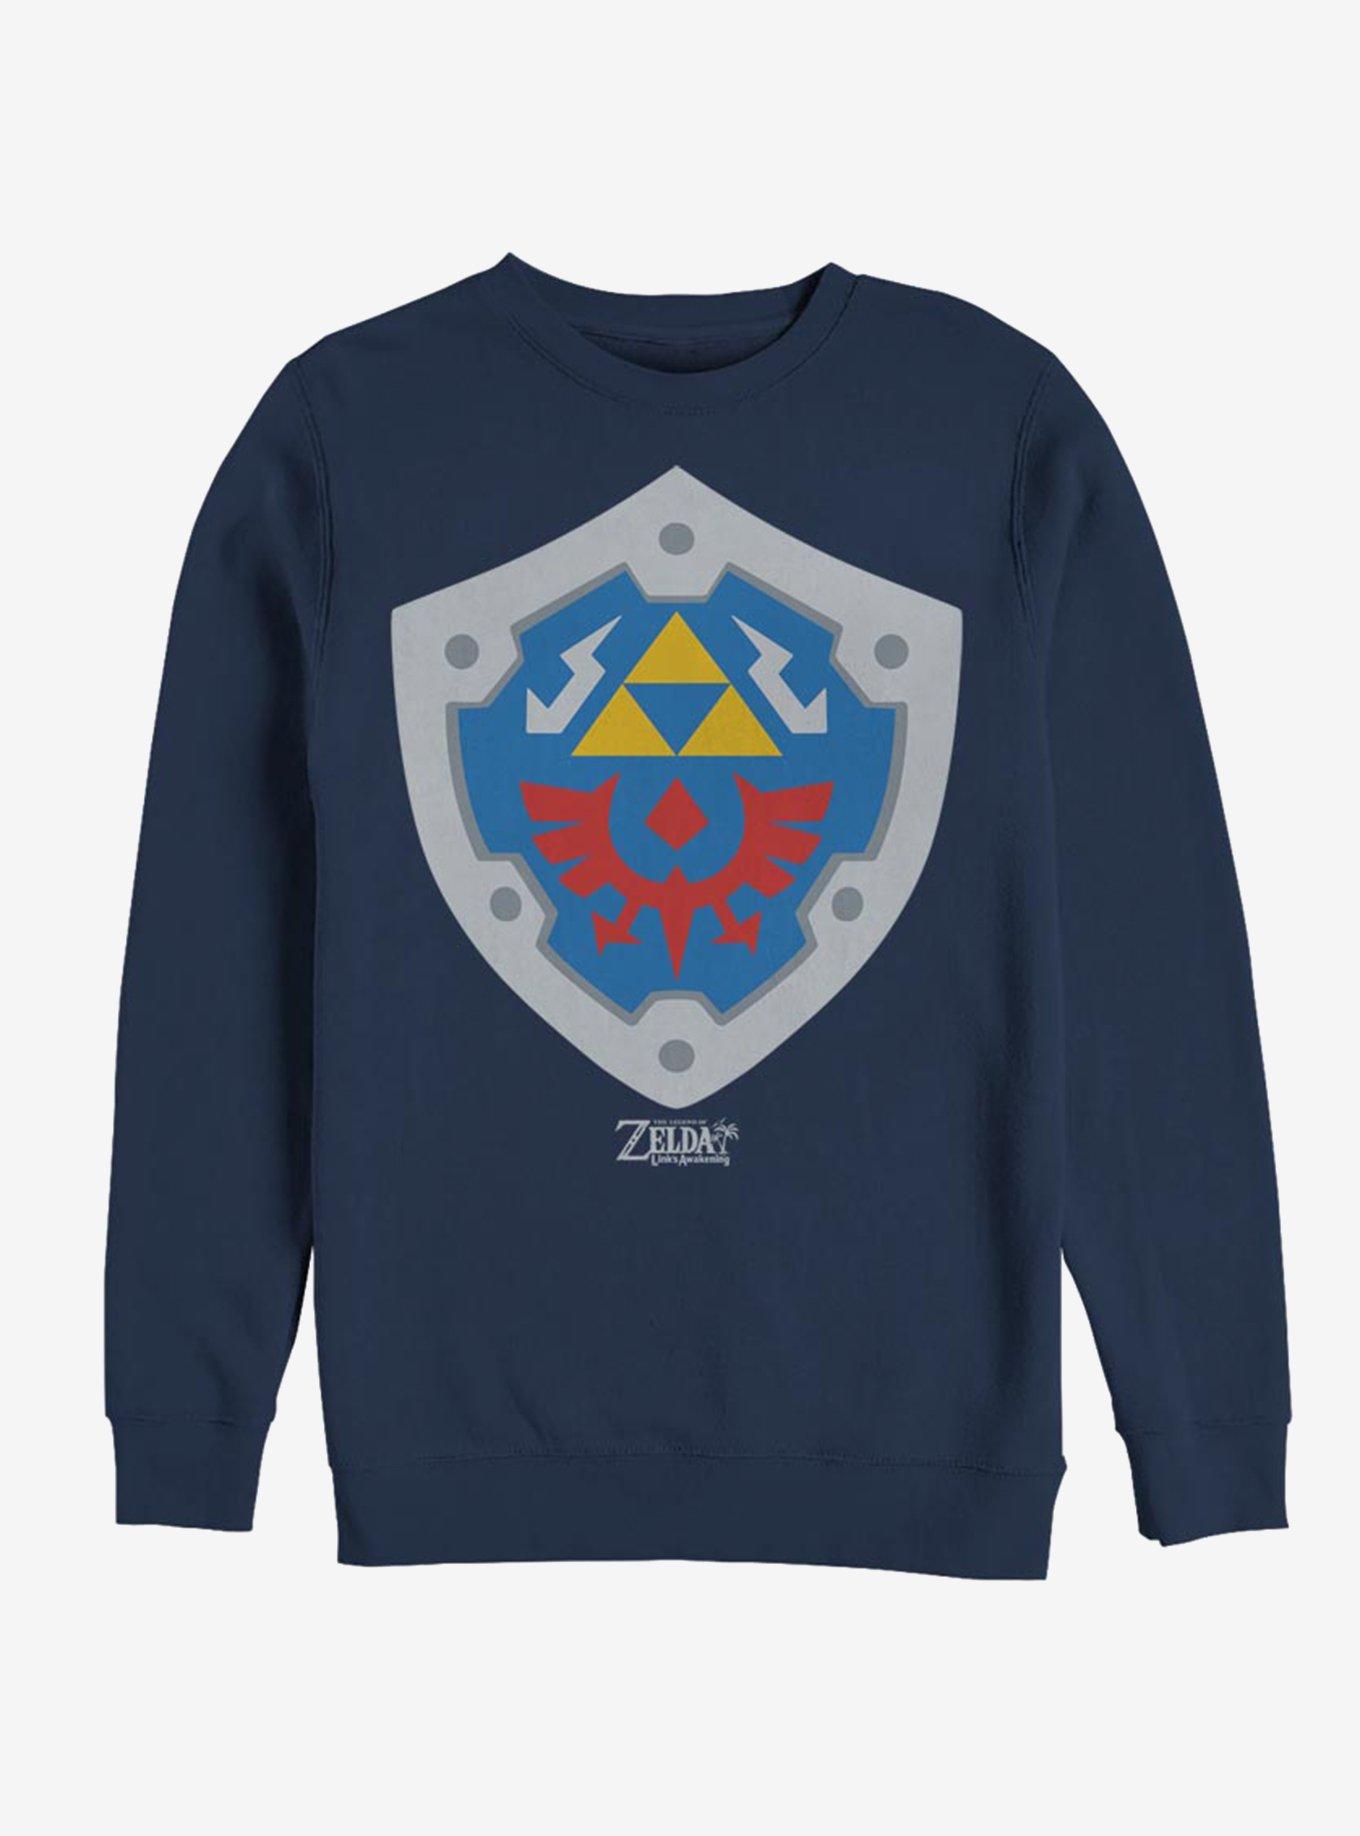 Nintendo The Legend of Zelda: Link's Awakening Hylian Shield Sweatshirt, NAVY, hi-res